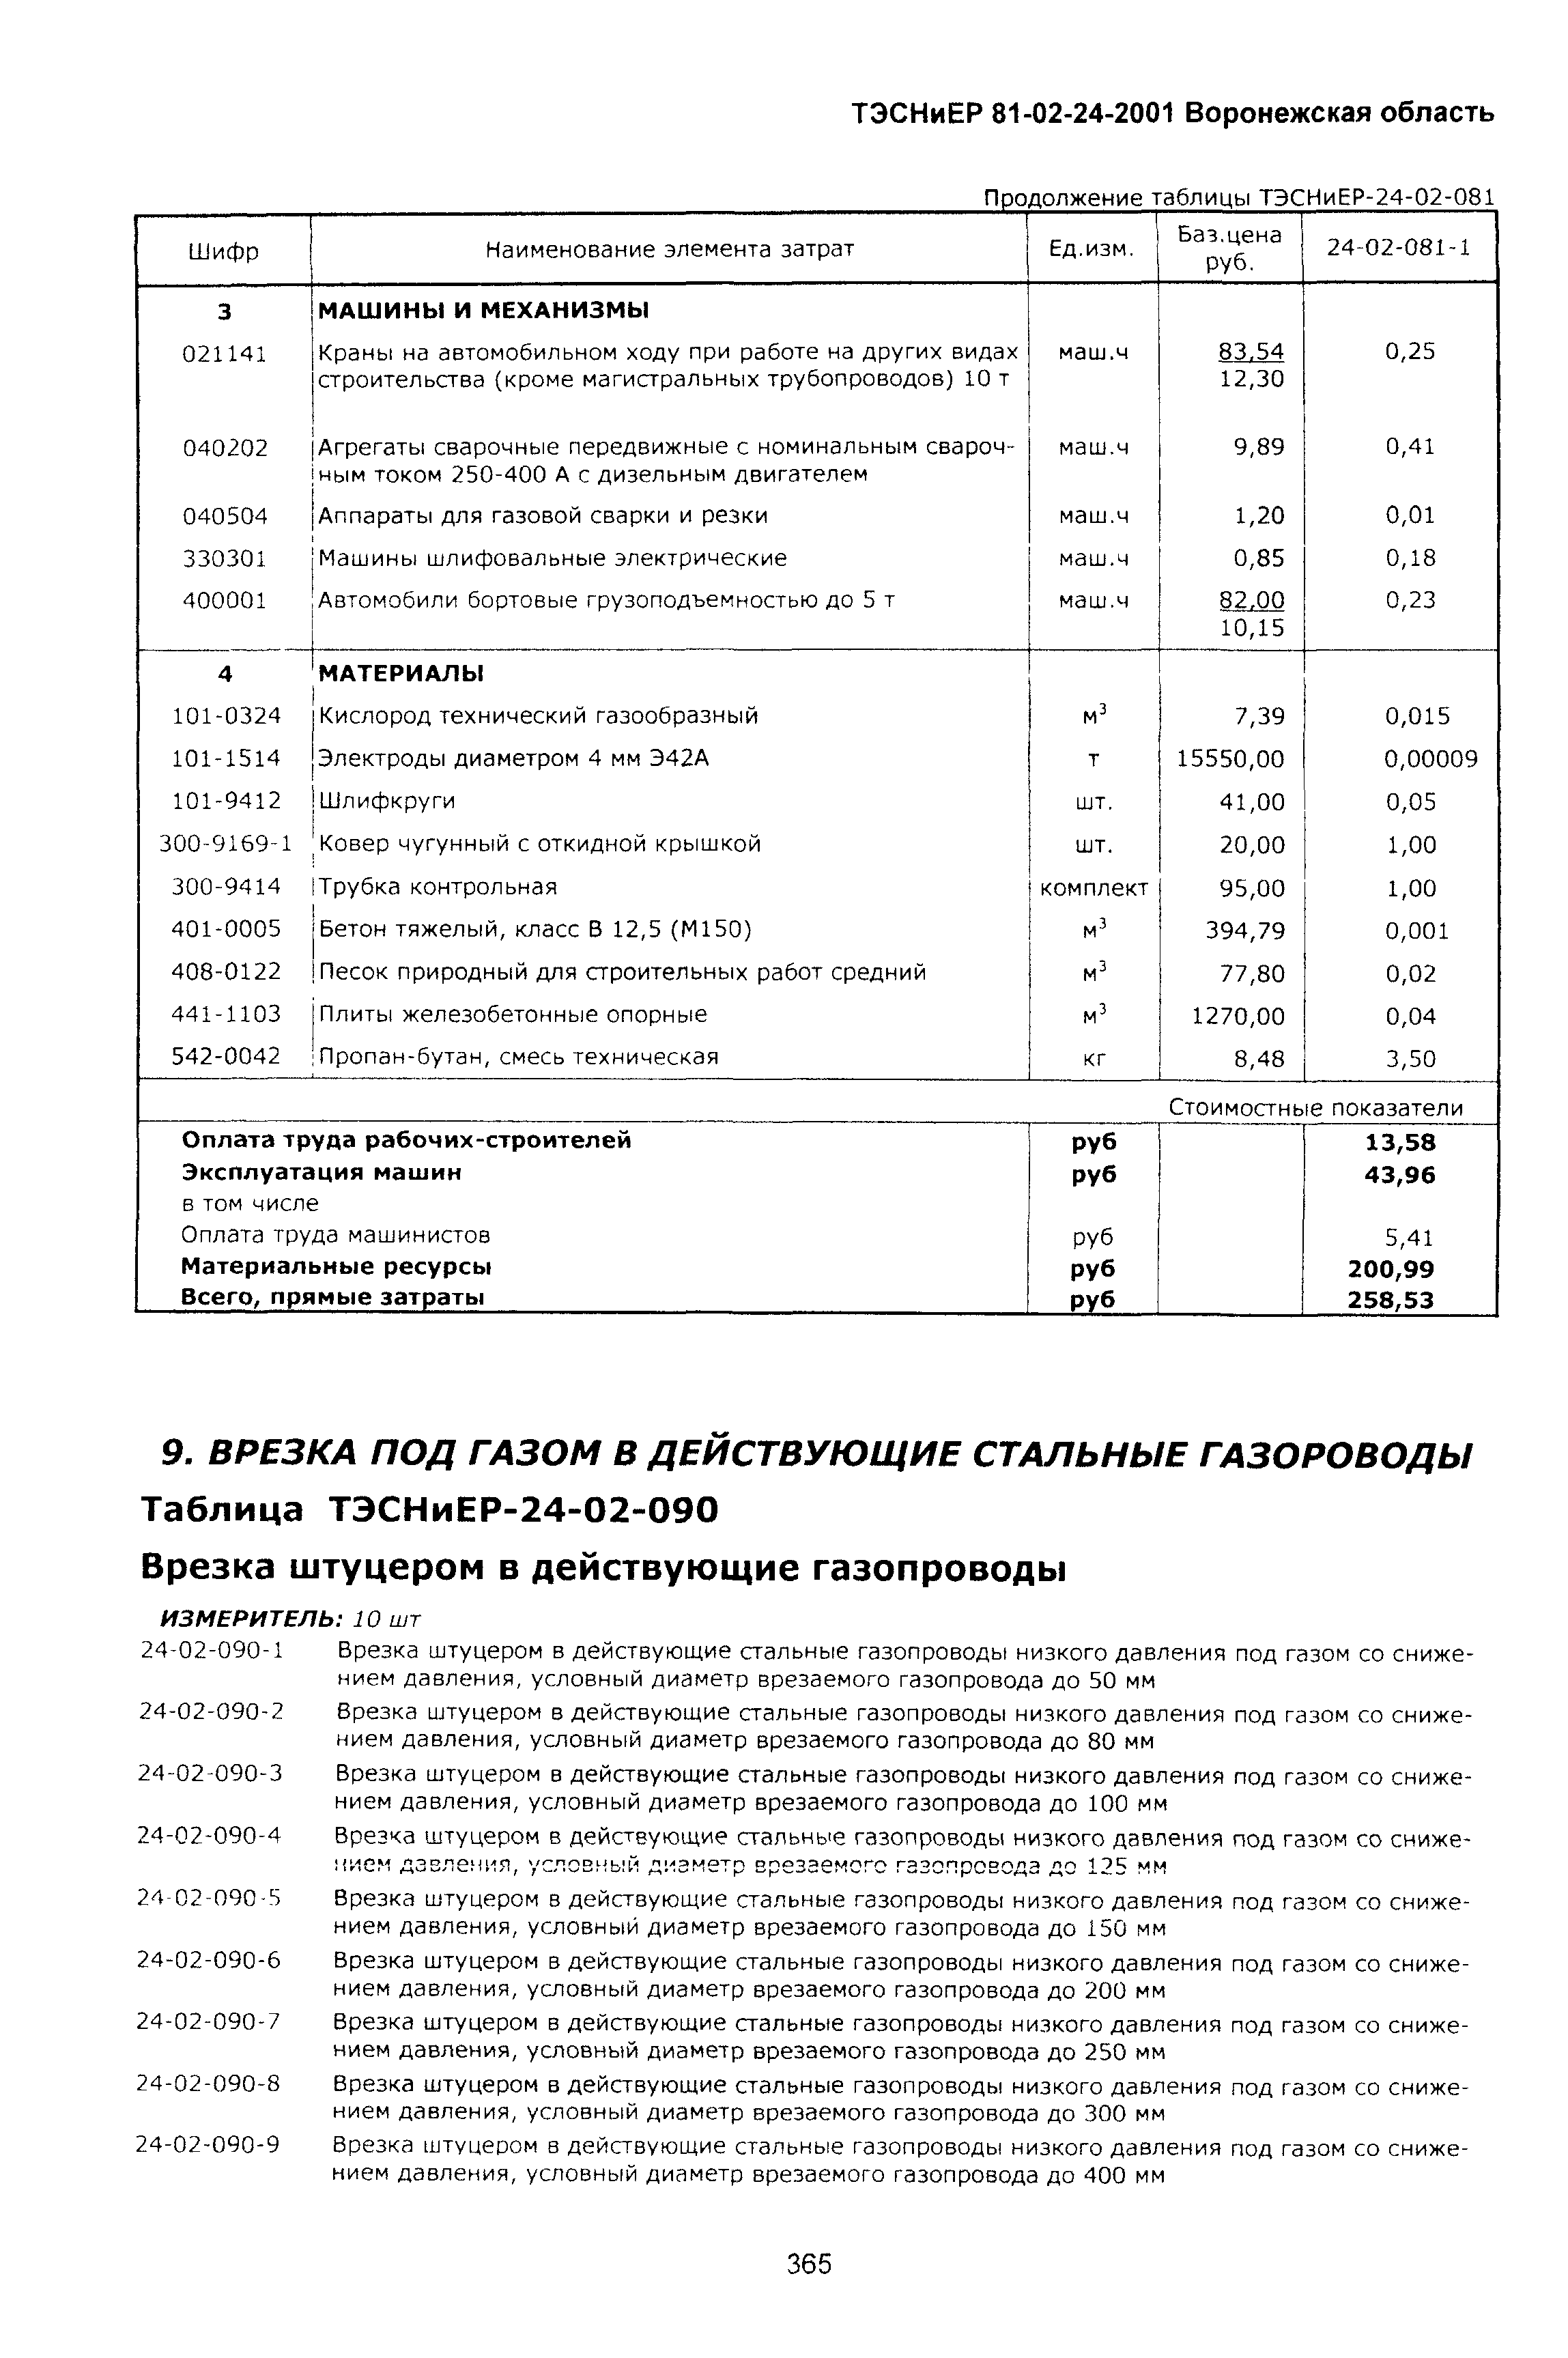 ТЭСНиЕР Воронежская область 81-02-24-2001